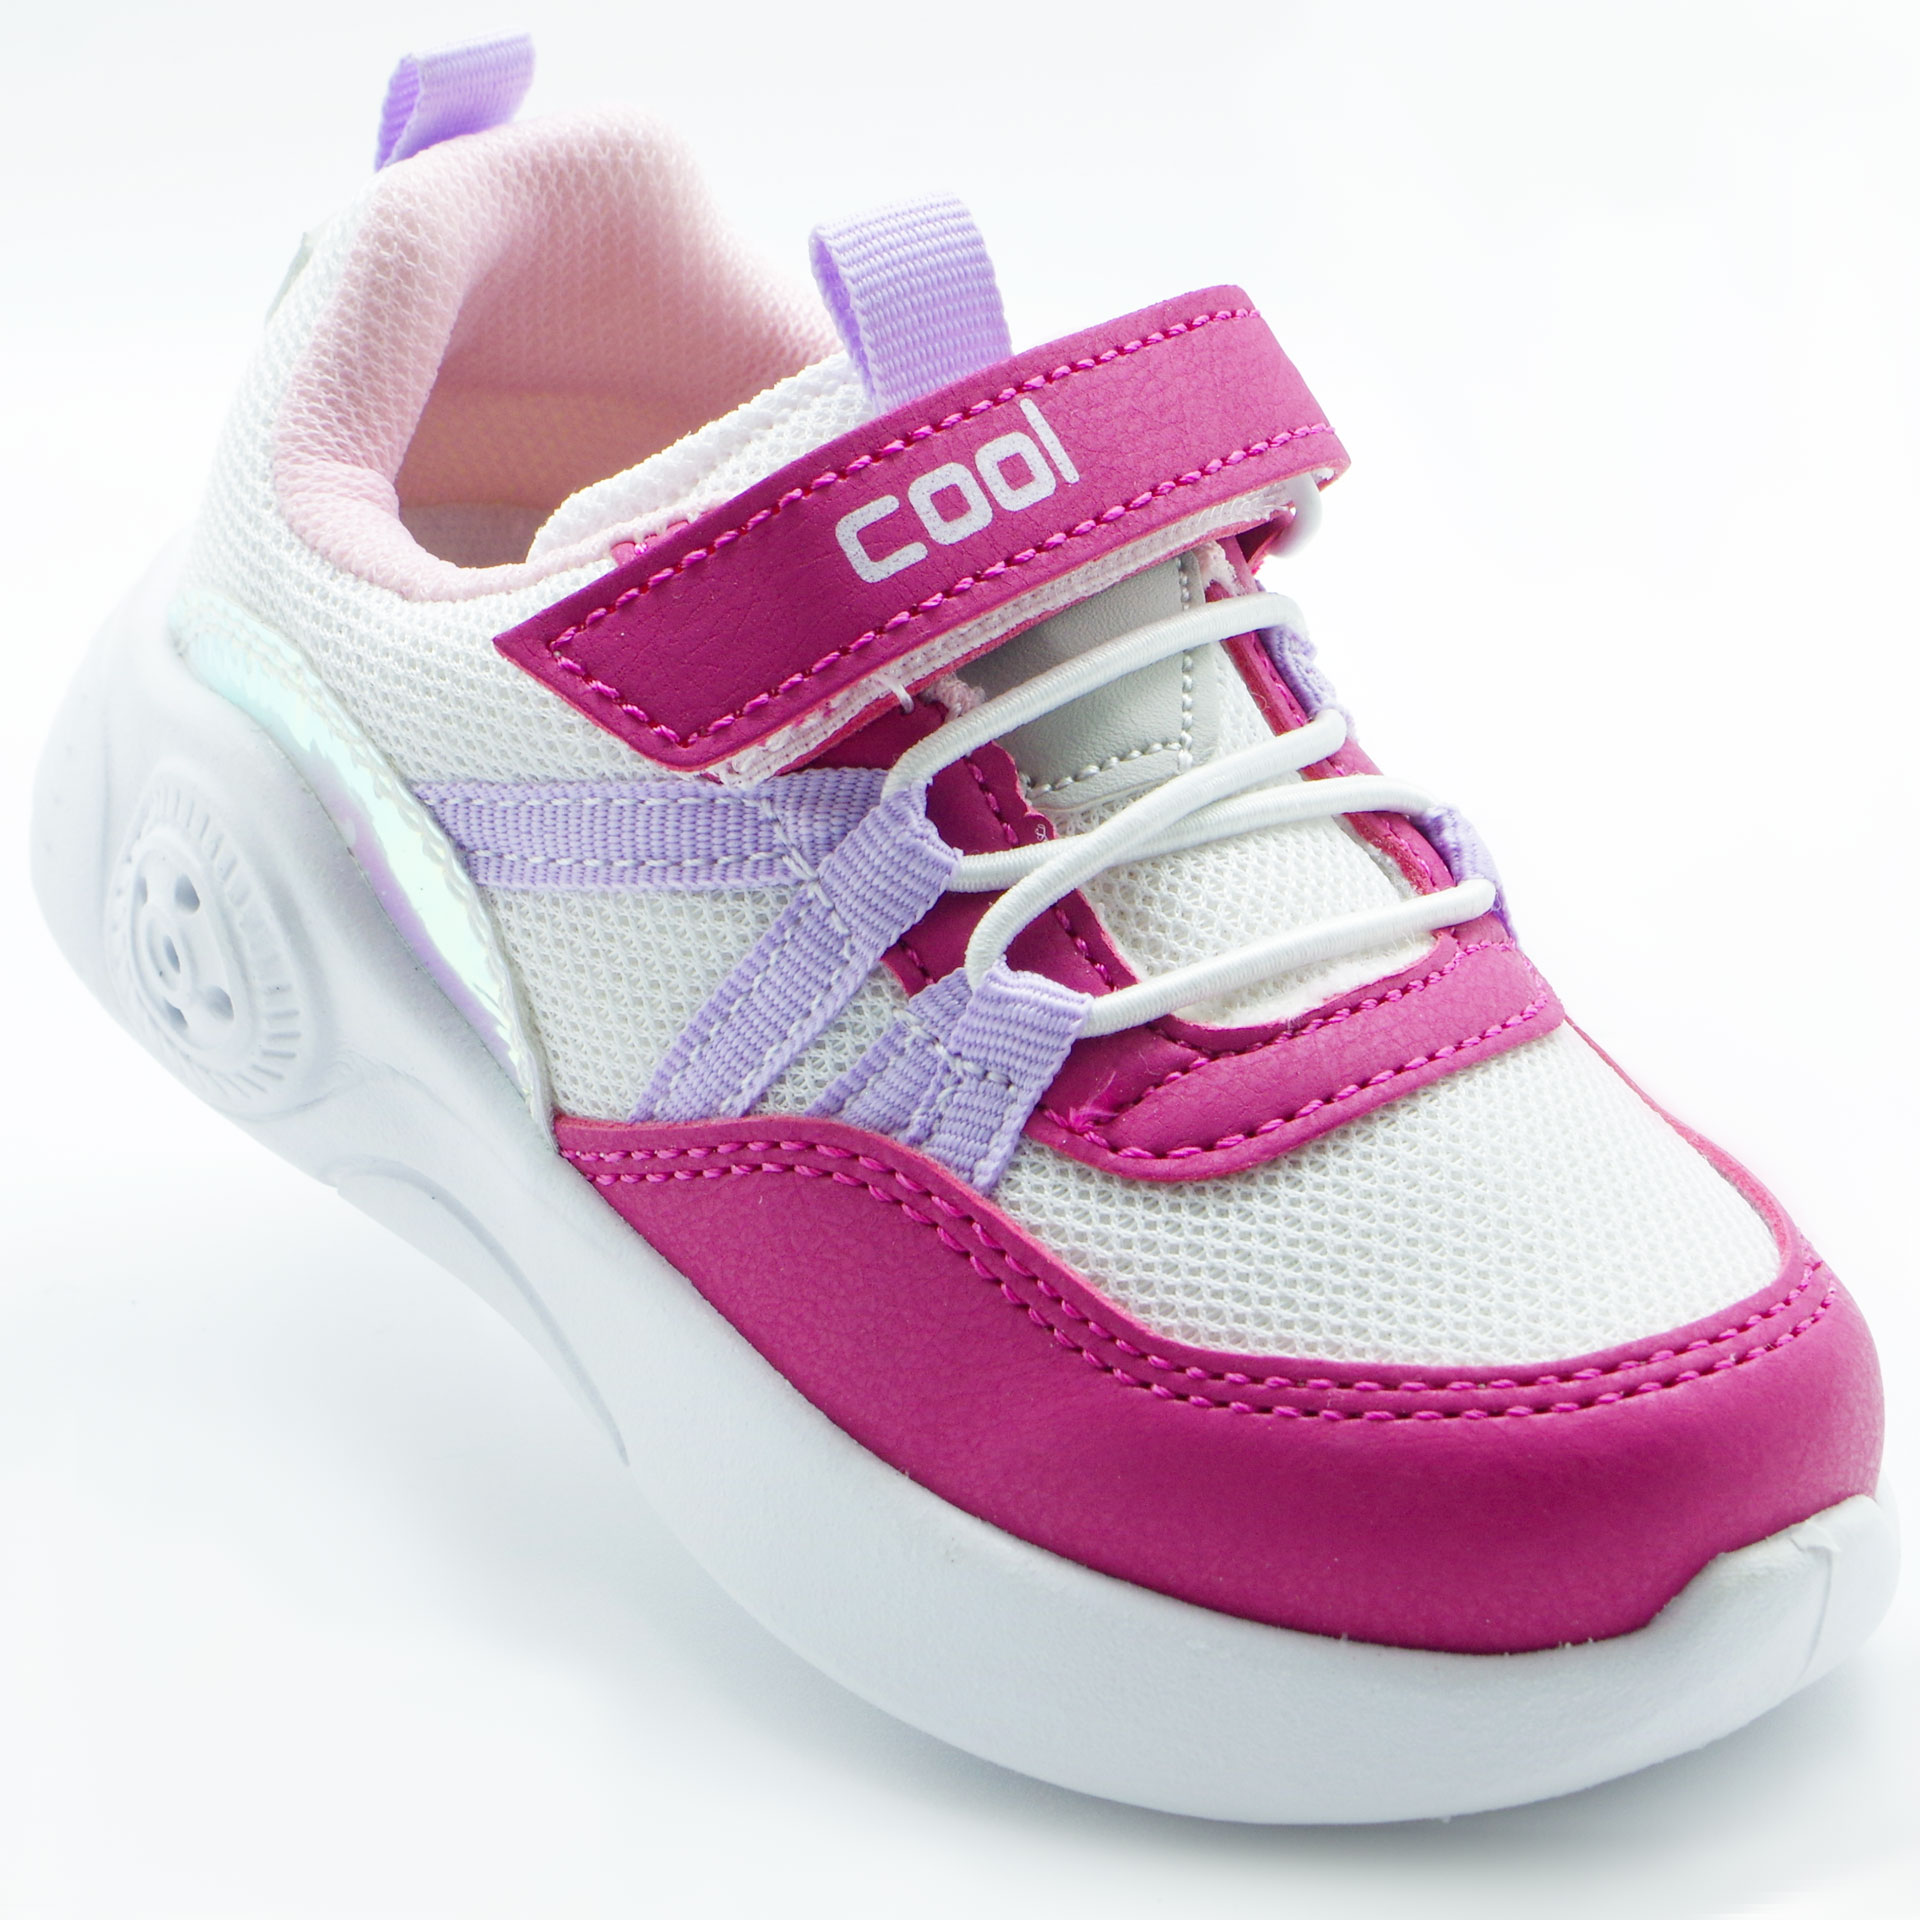 Led Кросівки для дівчат (2198) для дівчинки, матеріал Текстиль, Рожевий колір, 22-26 розміри – Sole Kids. Фото 1